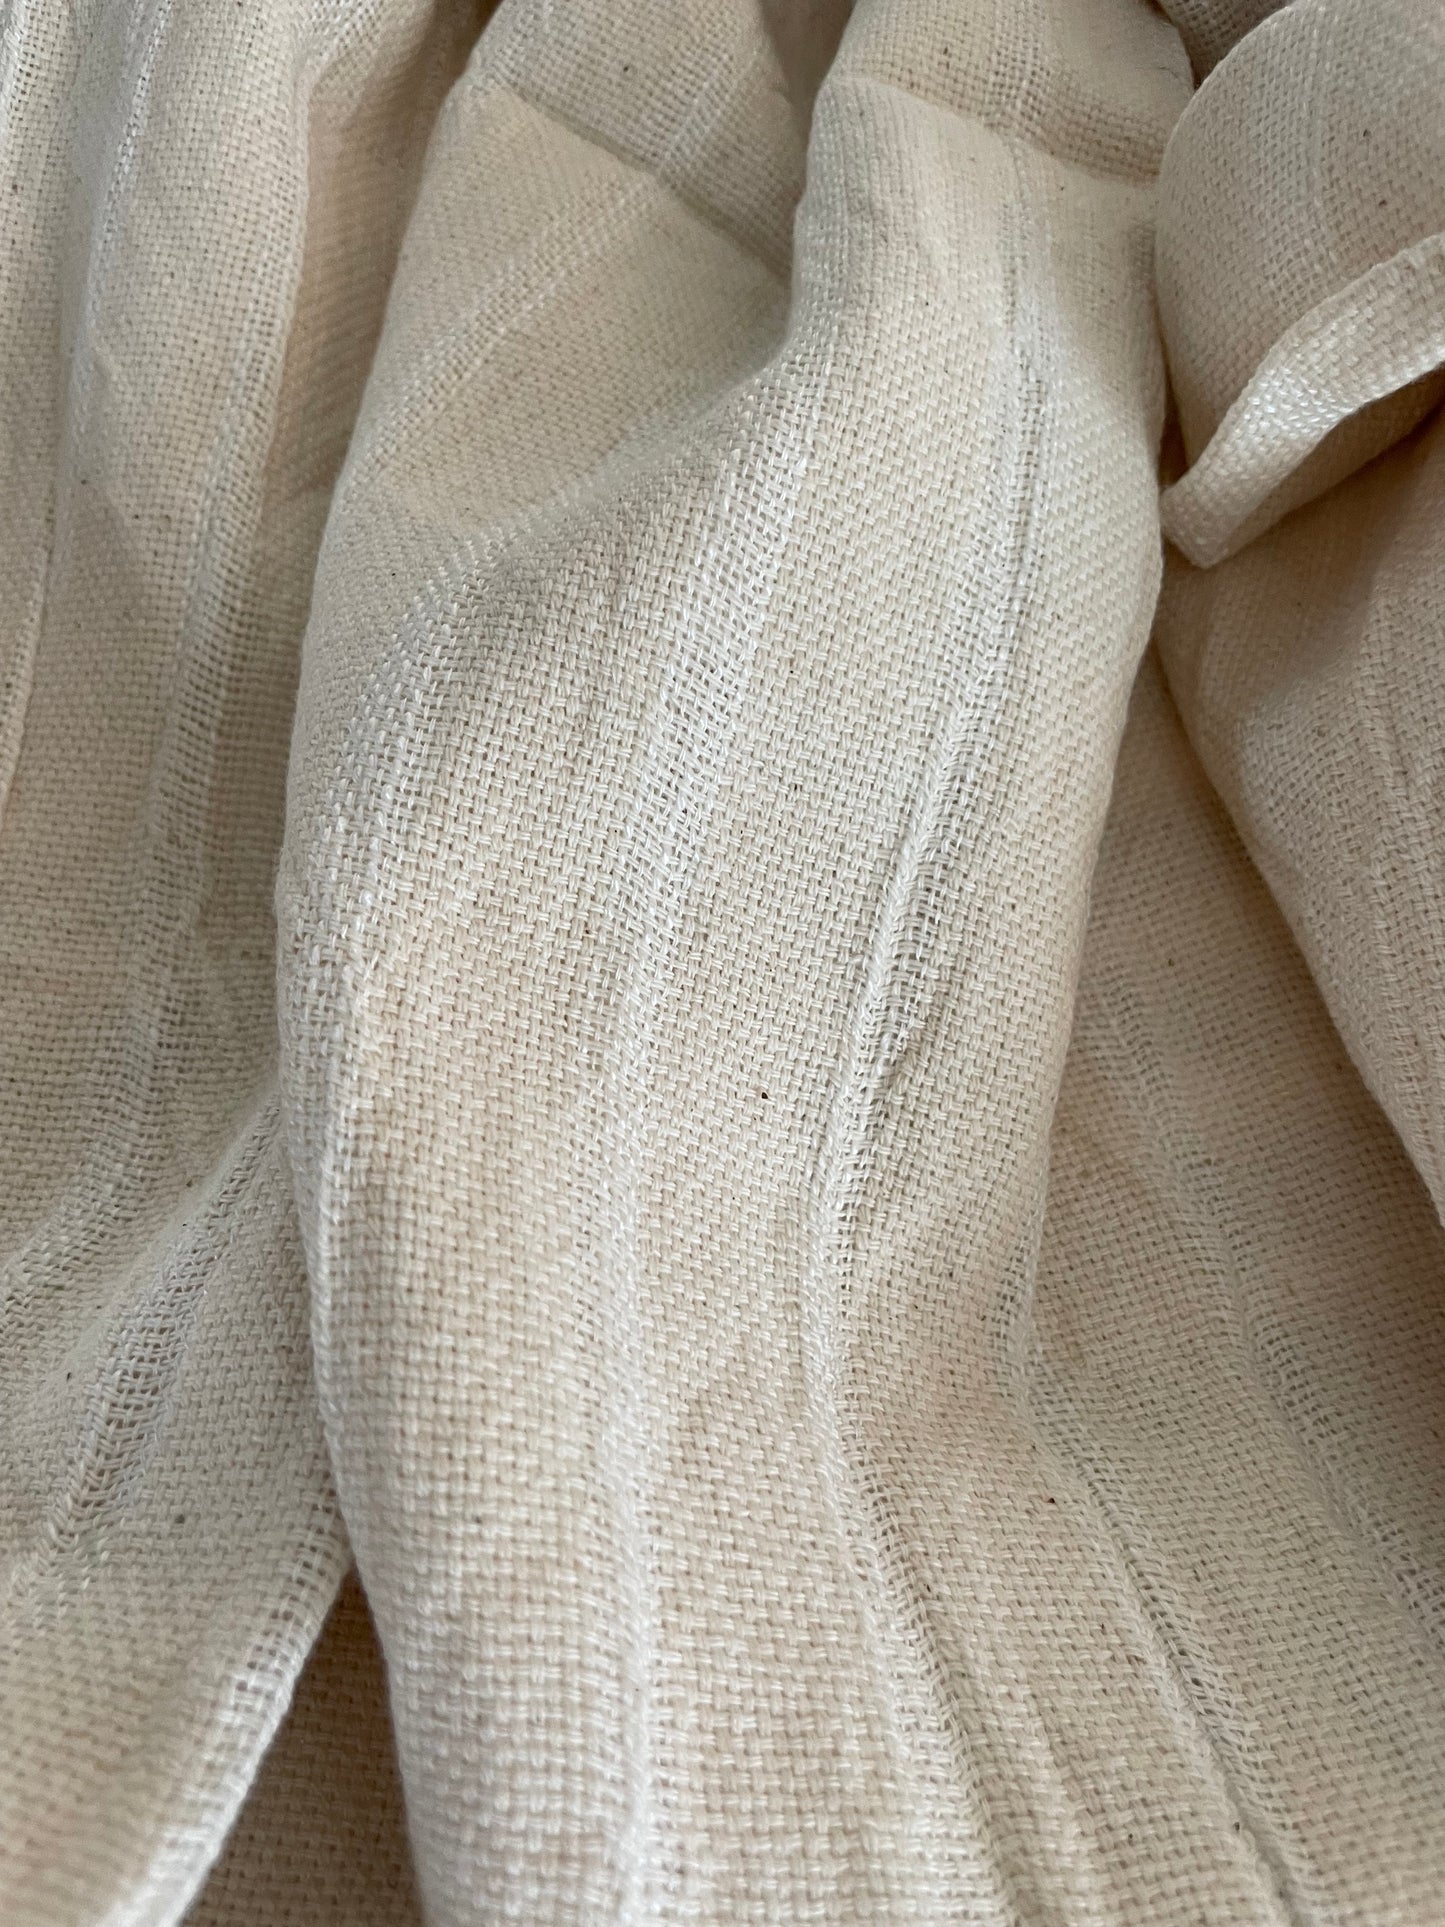 Hamam vævede håndklæder i 100% lokal høstet bomuld. Fair Trade fra Syrien